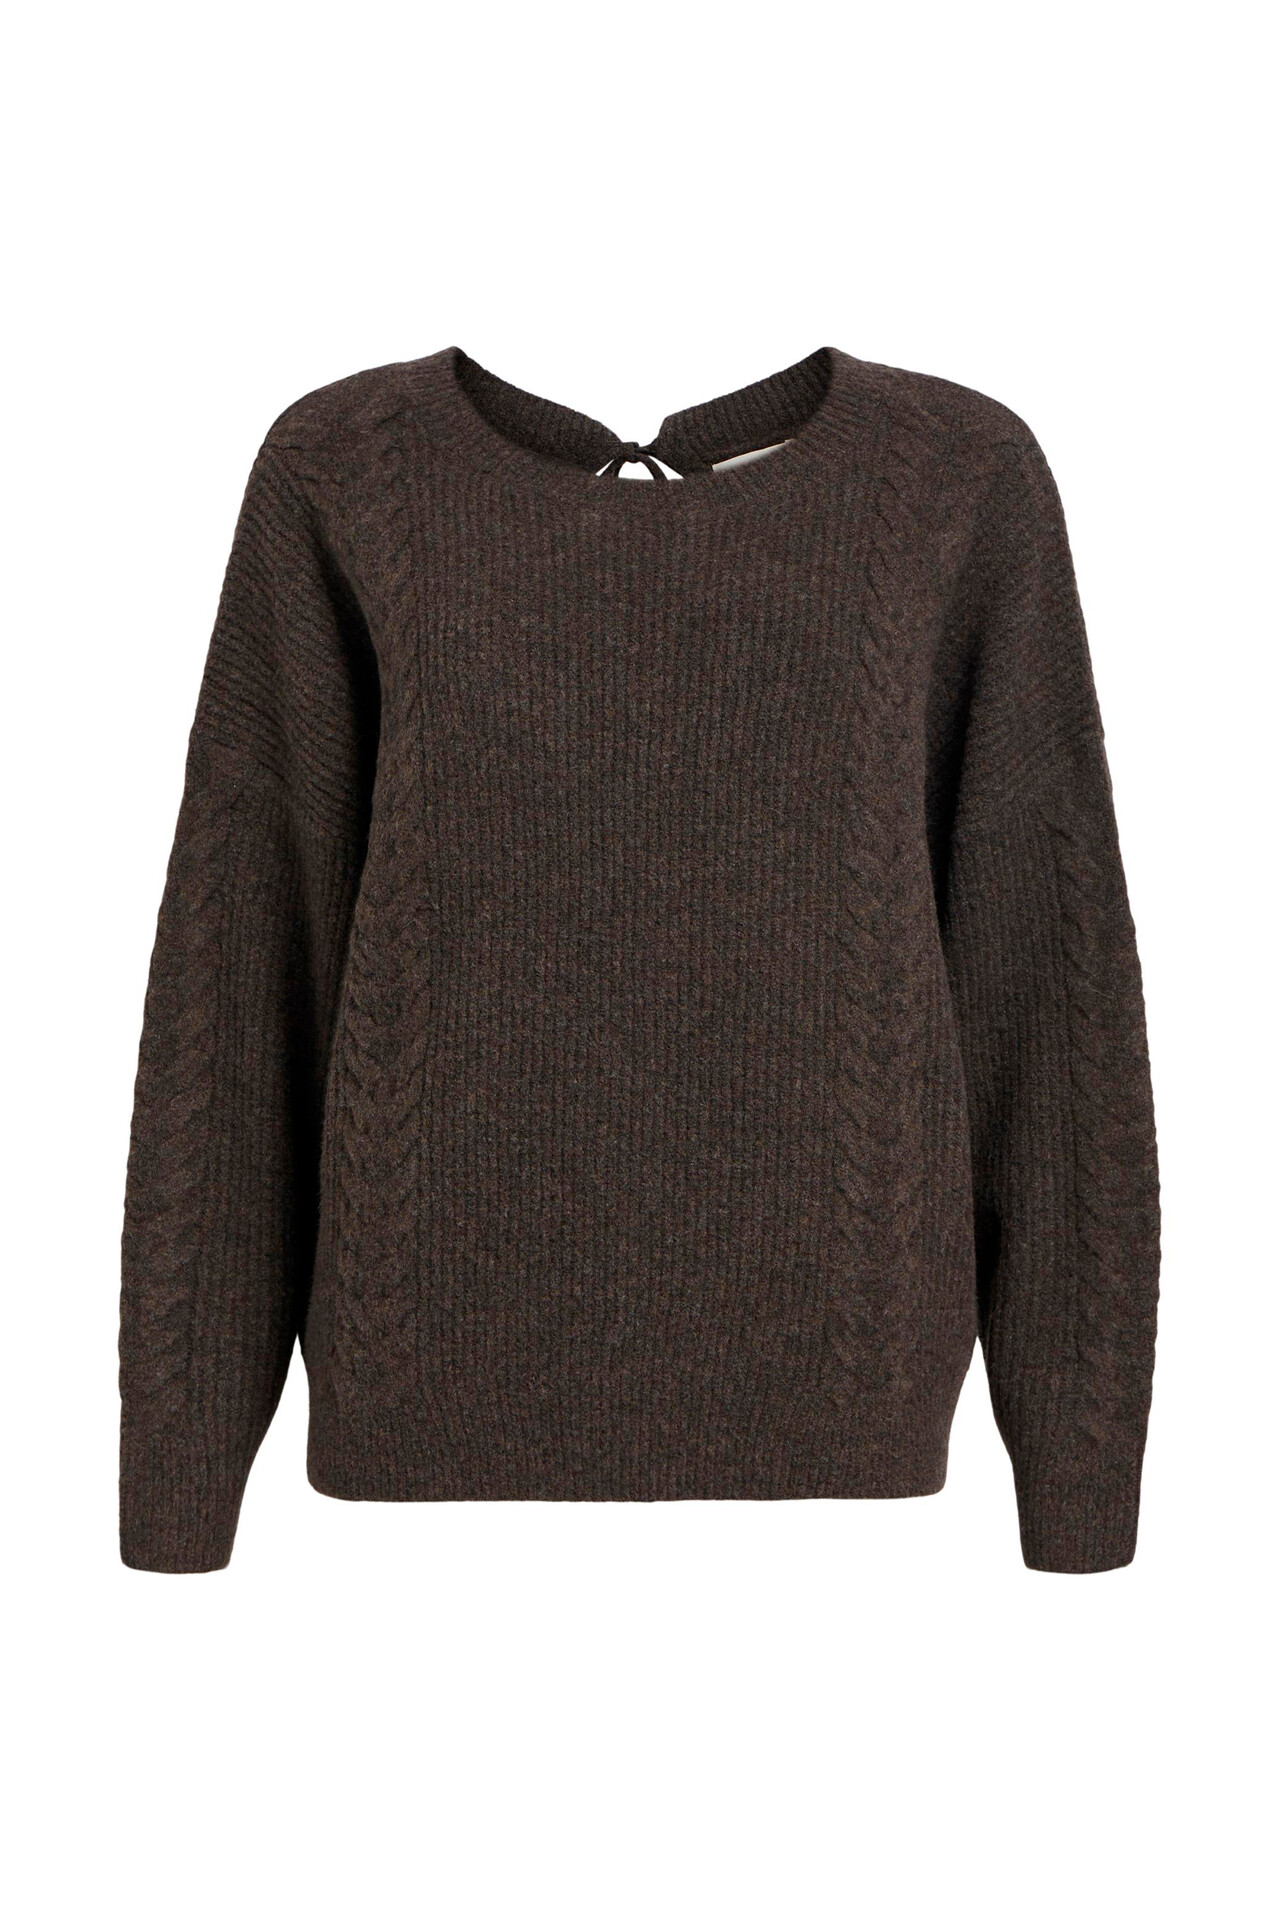 OBJECT OBJDonovani L/S knit pullover (DARK BROWN XL)